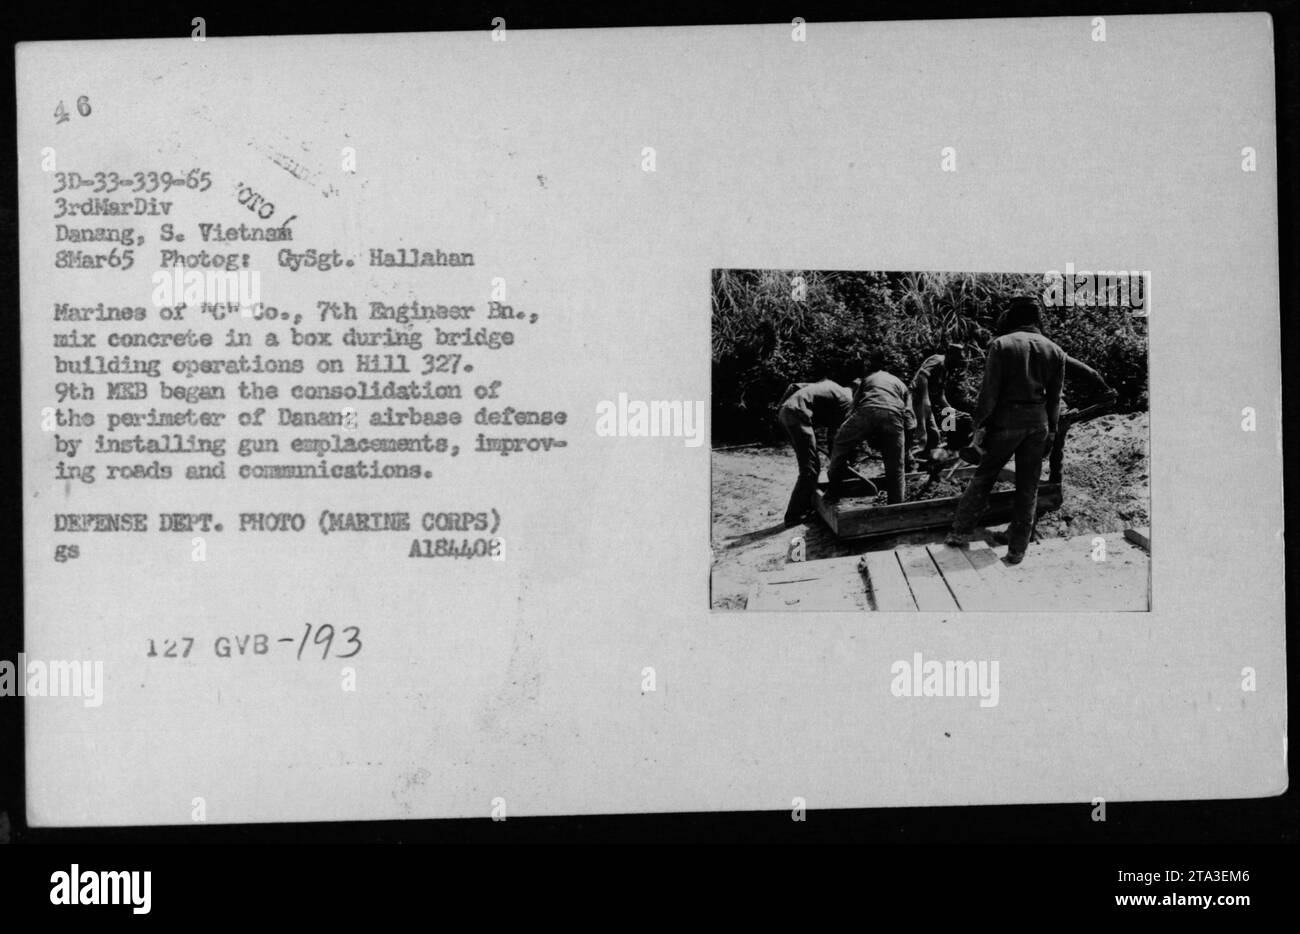 Marines von 'C' Co., 7. Ingenieur EN. Beim Brückenbau auf Hill 327 in Danang, Südvietnam, am 8. März 1965 Beton in einer Kiste mischen. Die 9th Marine Expeditionary Brigade (MEB) arbeitete an der Konsolidierung des Umfangs der Verteidigung des Luftwaffenstützpunktes Danang durch die Installation von Geschützplatzierungen, Straßenverbesserungen und Kommunikationserweiterungen. Dieses Foto wurde von GySgt aufgenommen. Hallahan. Stockfoto